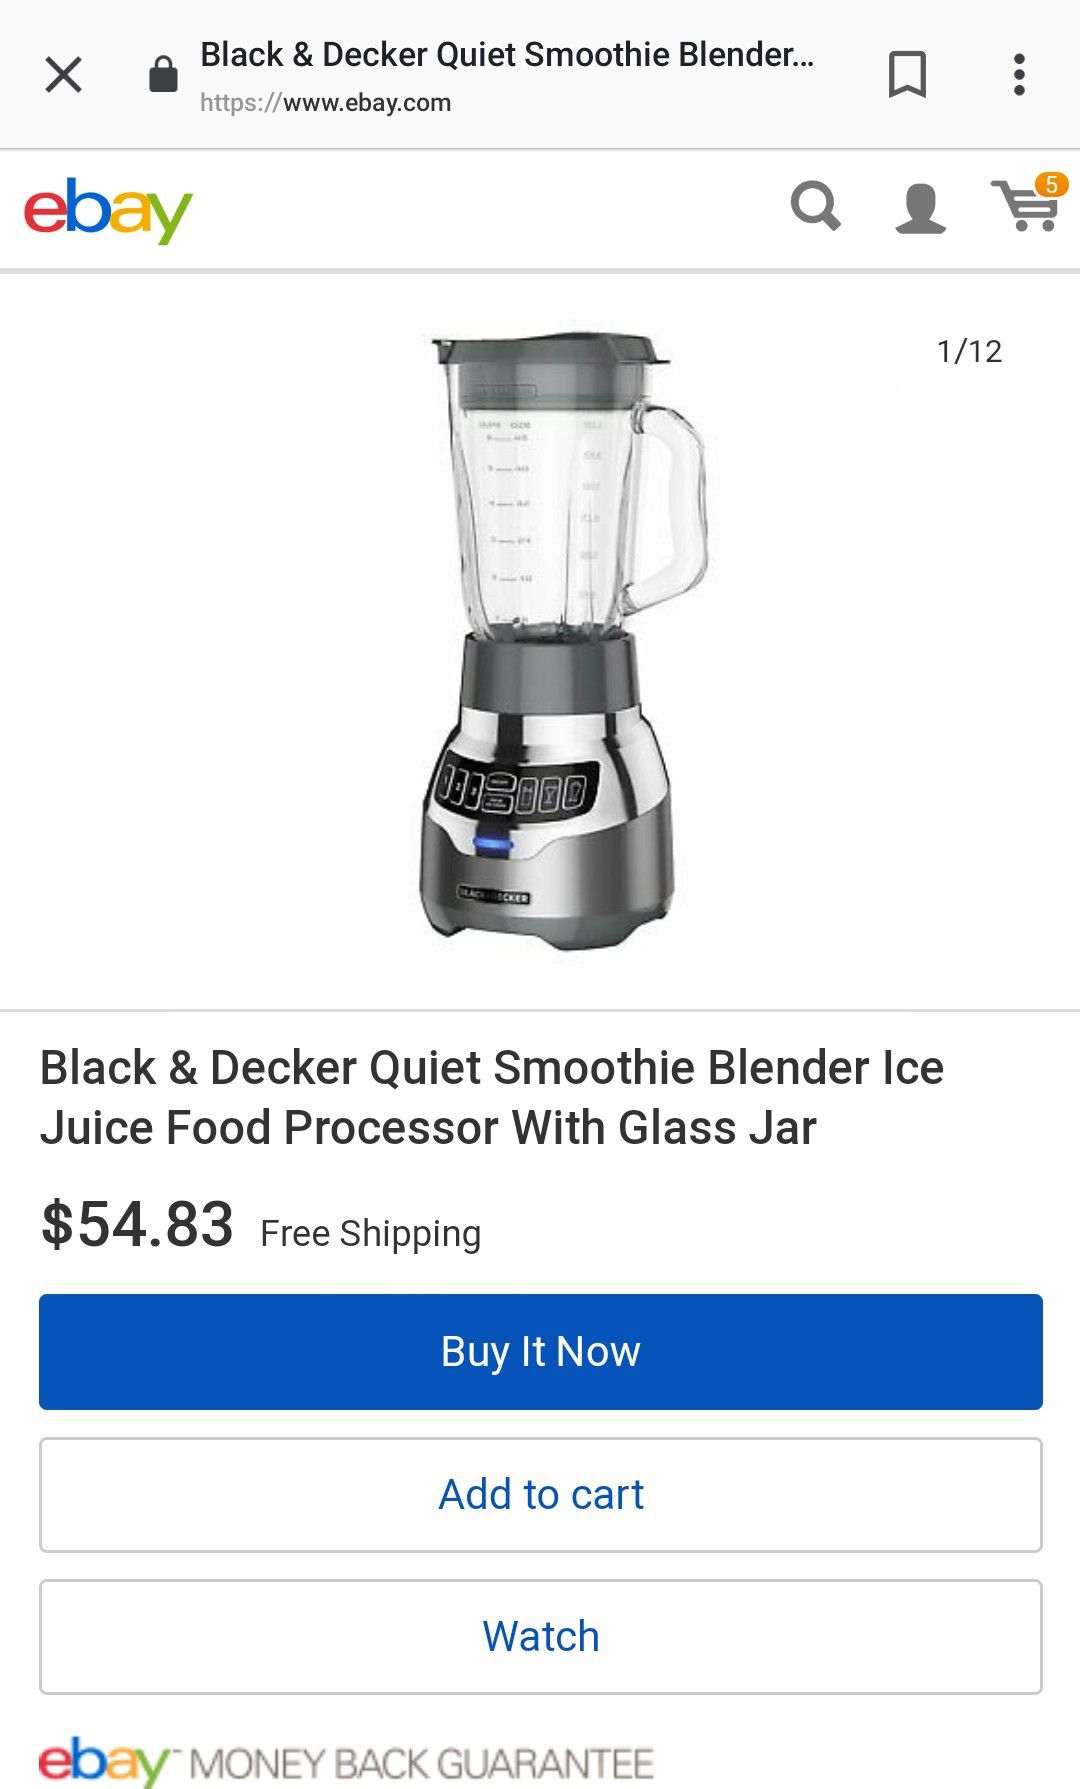 Black and Decker Quiet Blender for Sale in Anaheim, CA - OfferUp